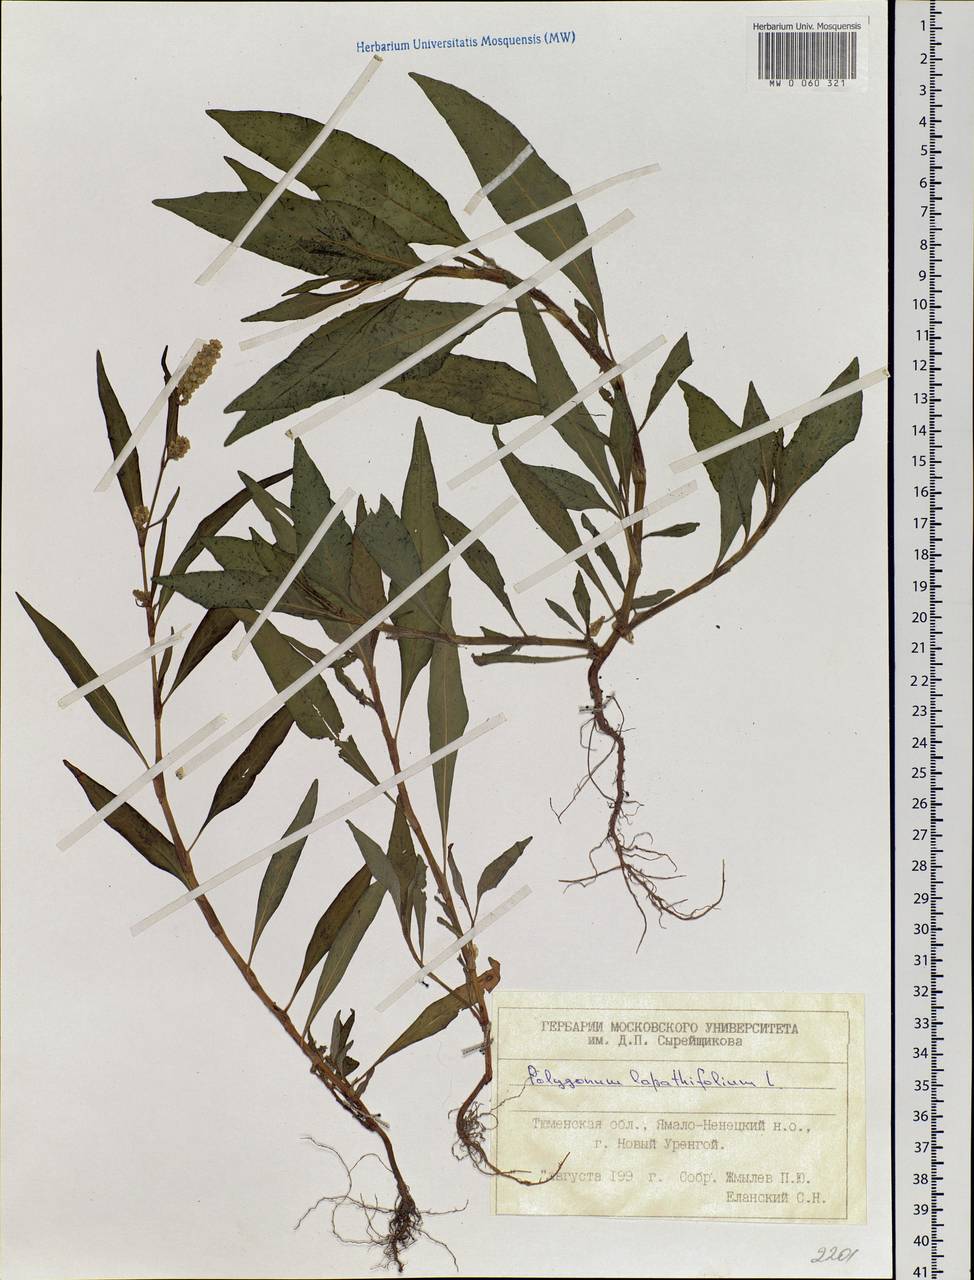 Persicaria lapathifolia (L.) Gray, Siberia, Western Siberia (S1) (Russia)